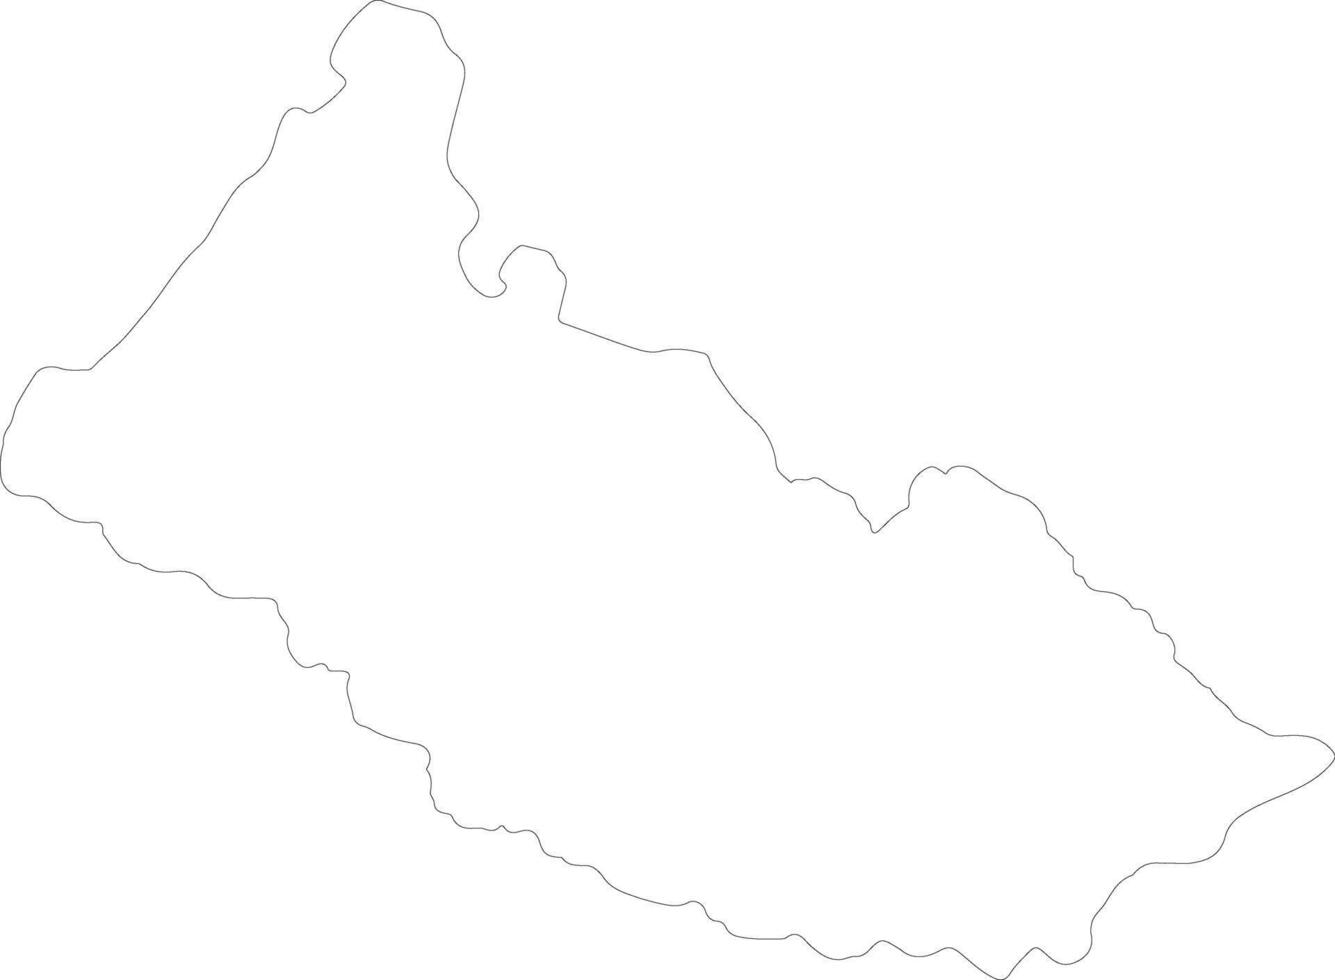 Caqueta Colombia outline map vector